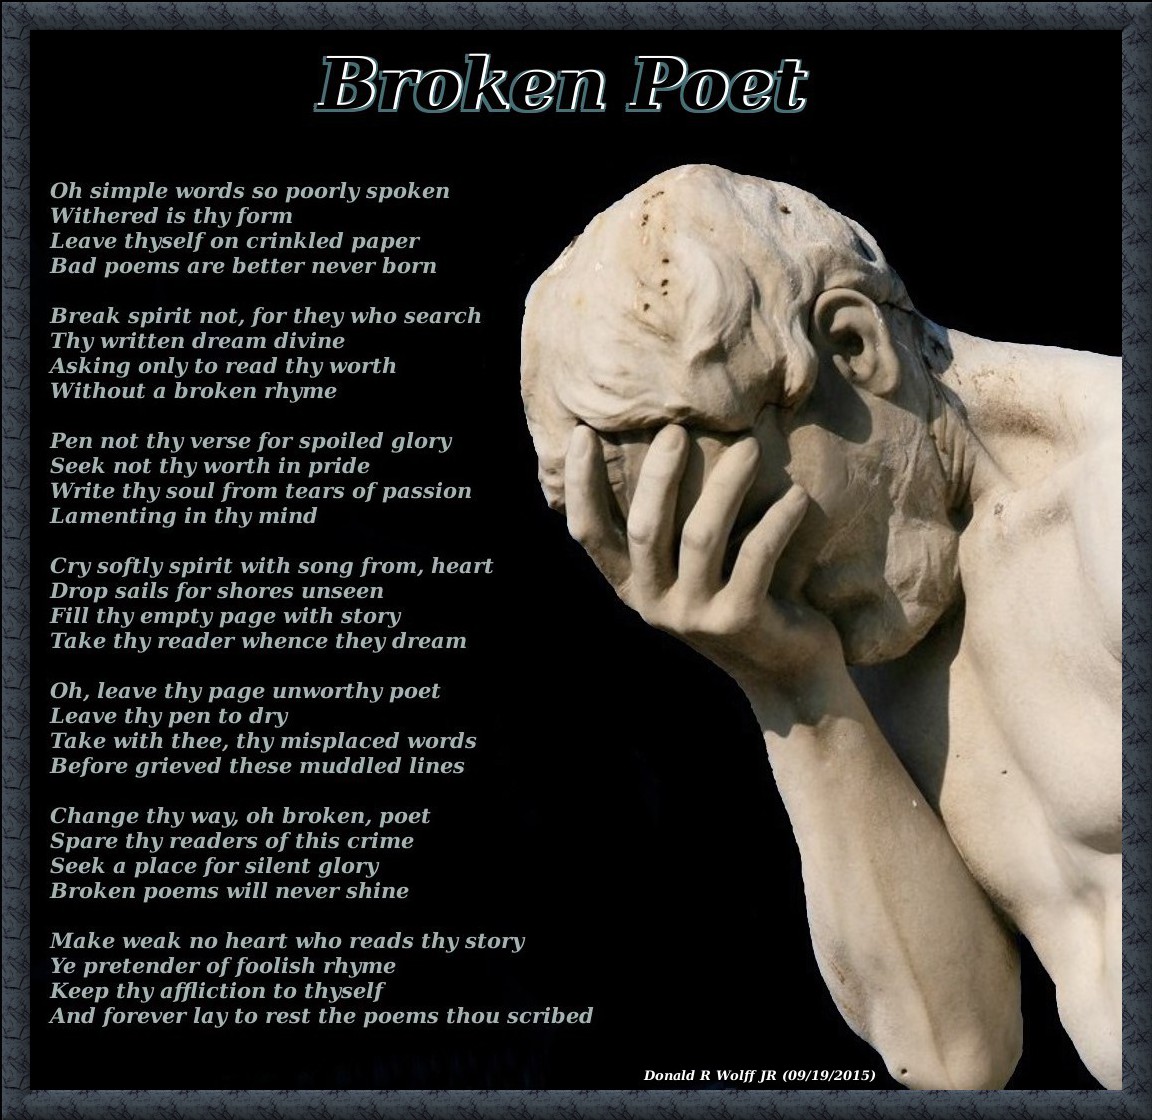 Broken Poet